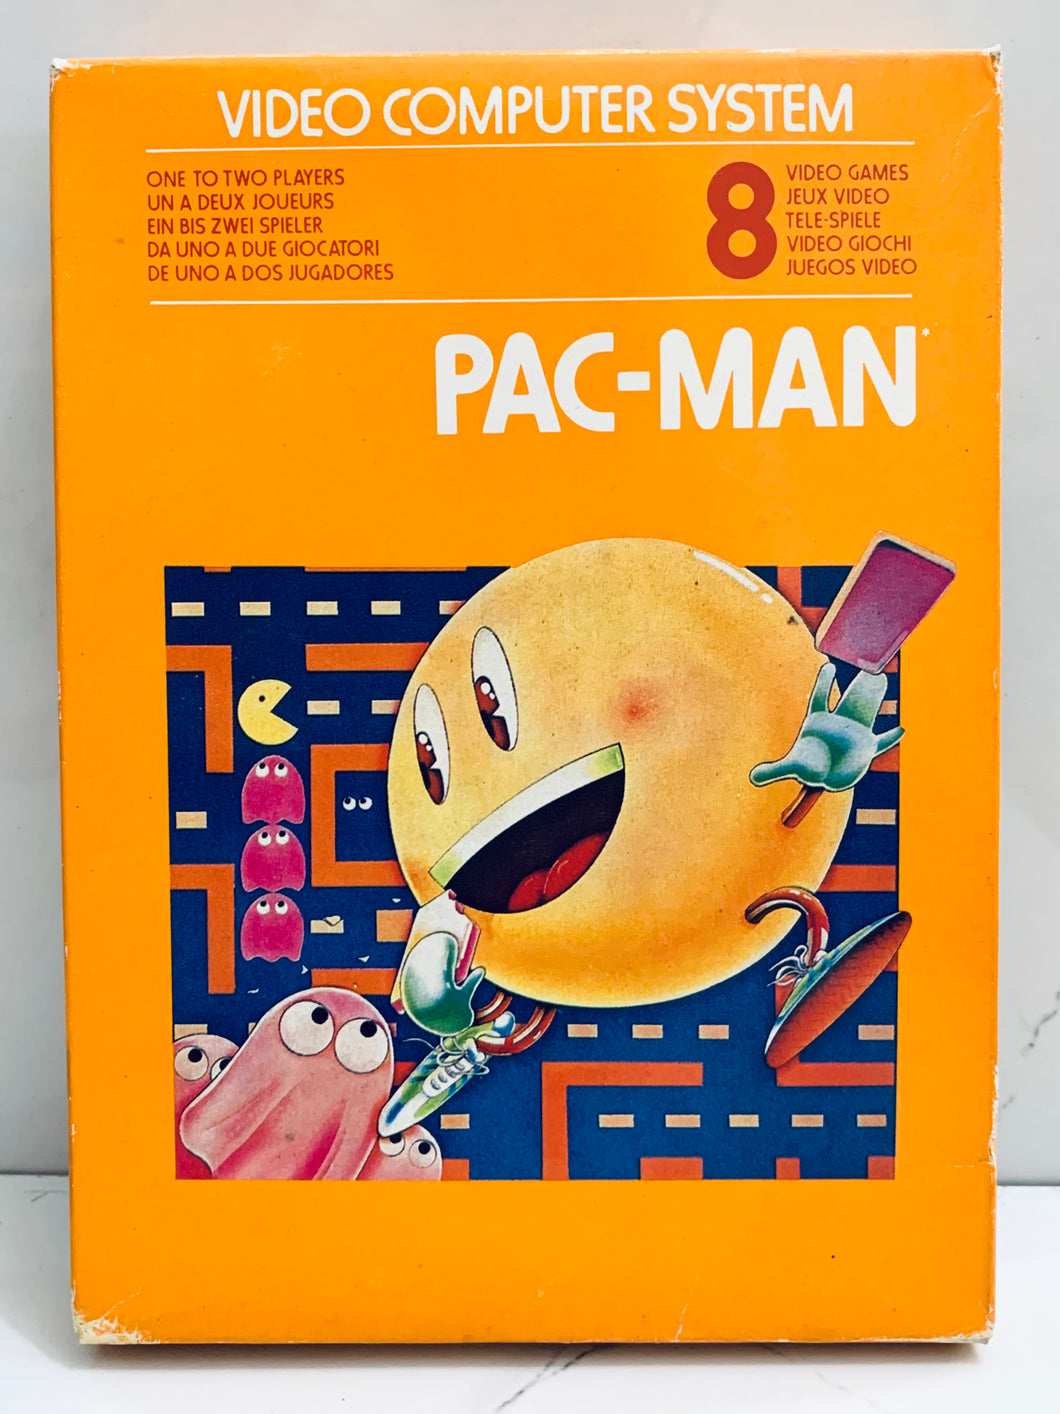 Pac-Man - Atari VCS 2600 - NTSC - CIB